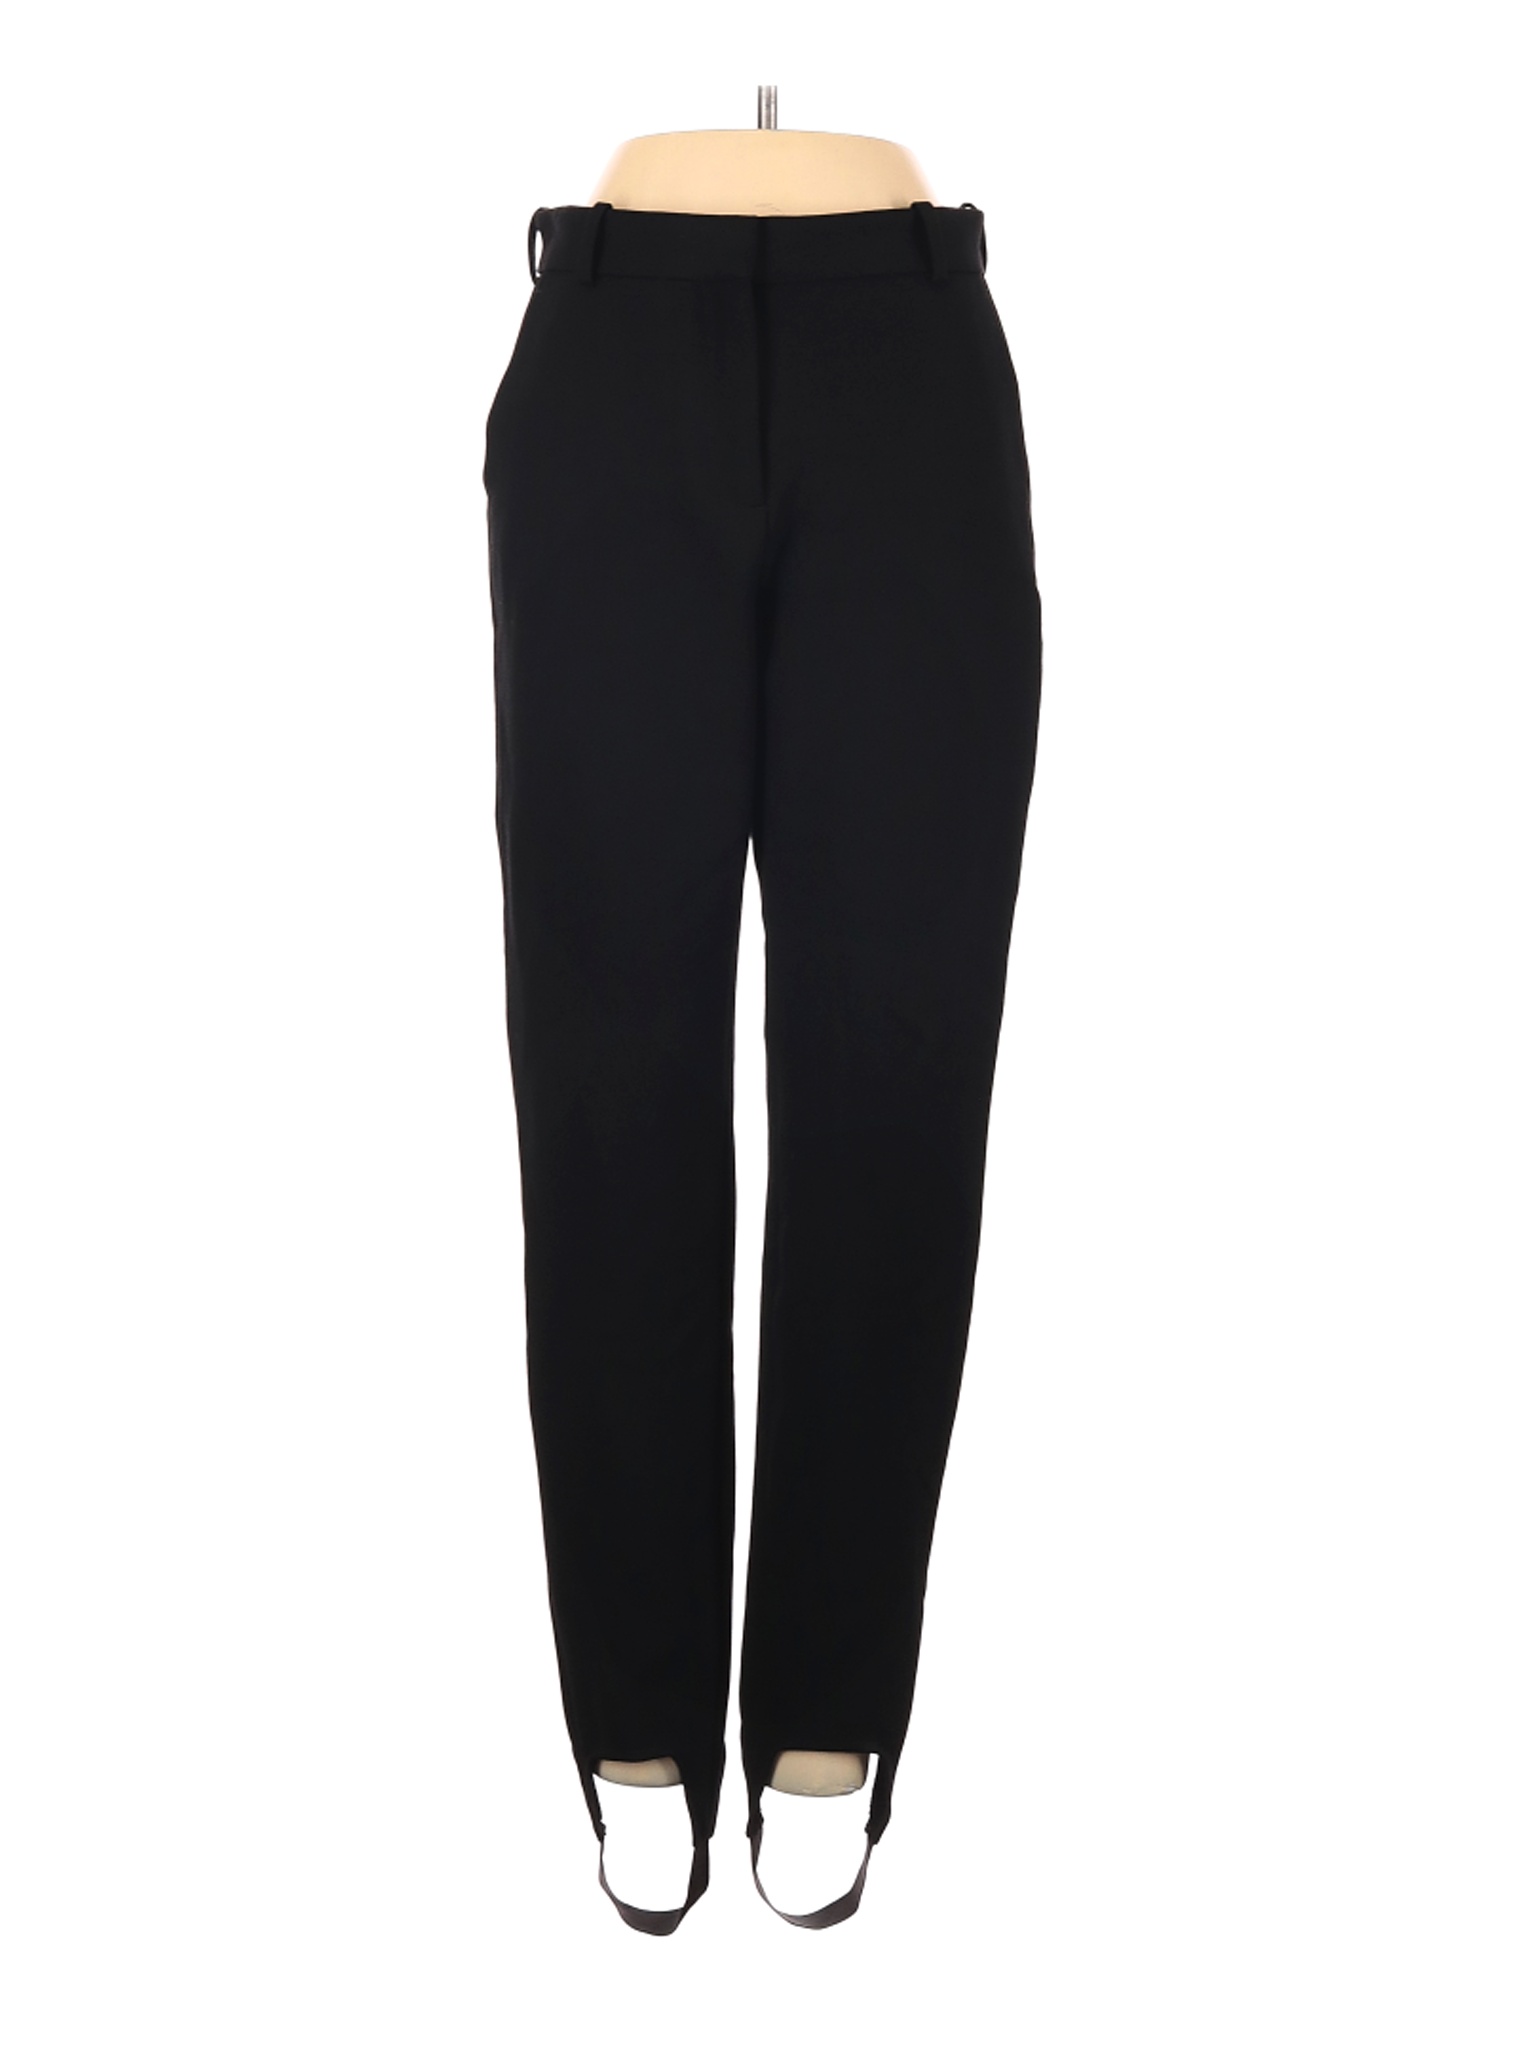 NWT Maje Women Black Dress Pants 36 eur | eBay